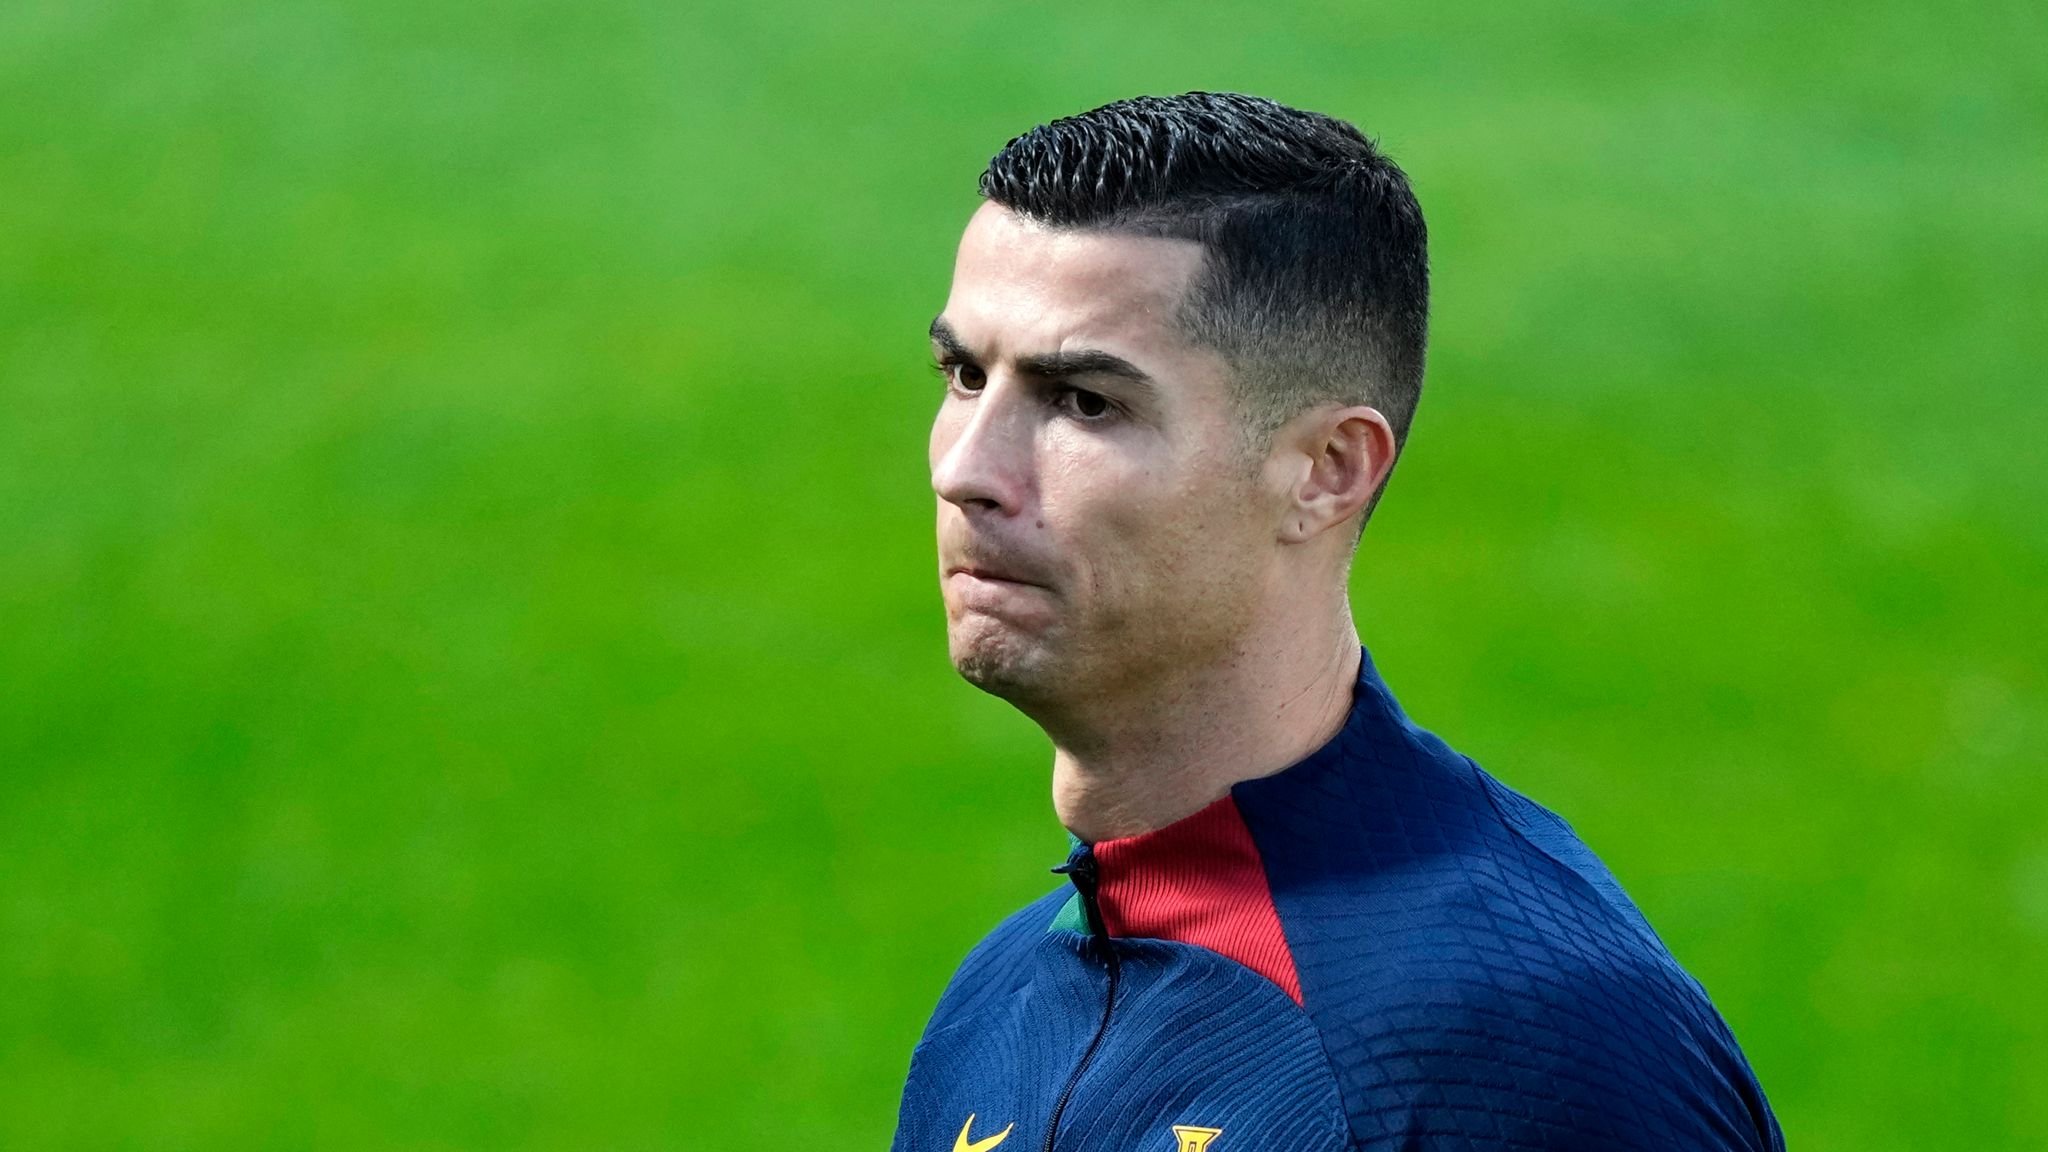  Cristiano Ronaldo ar putea fi inculpat într-un caz mai vechi de viol